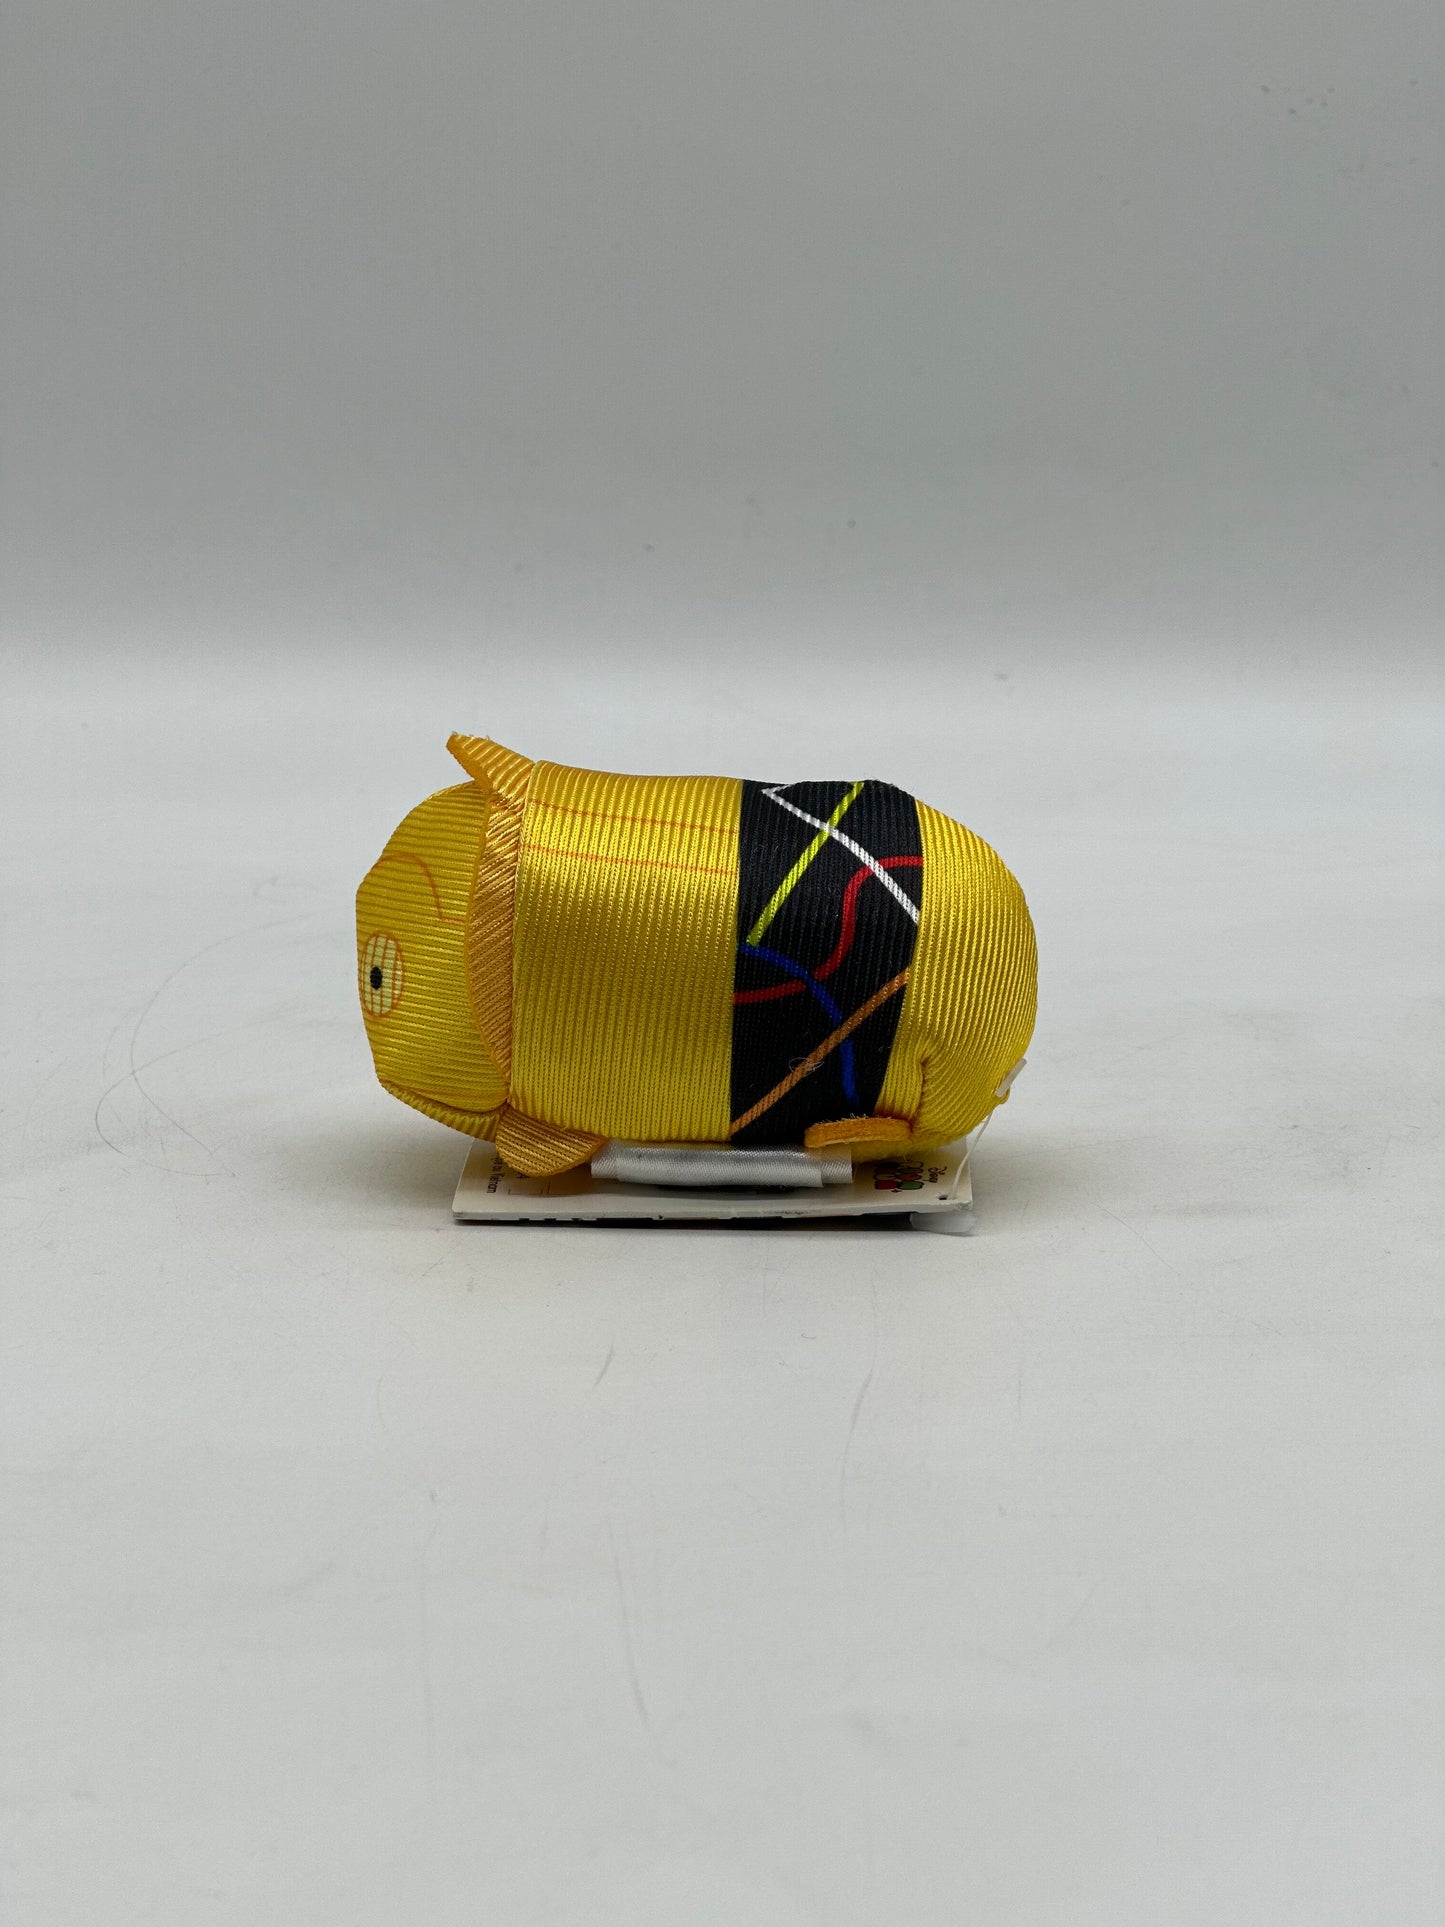 Tsum Tsum C3-PO Plush Mini